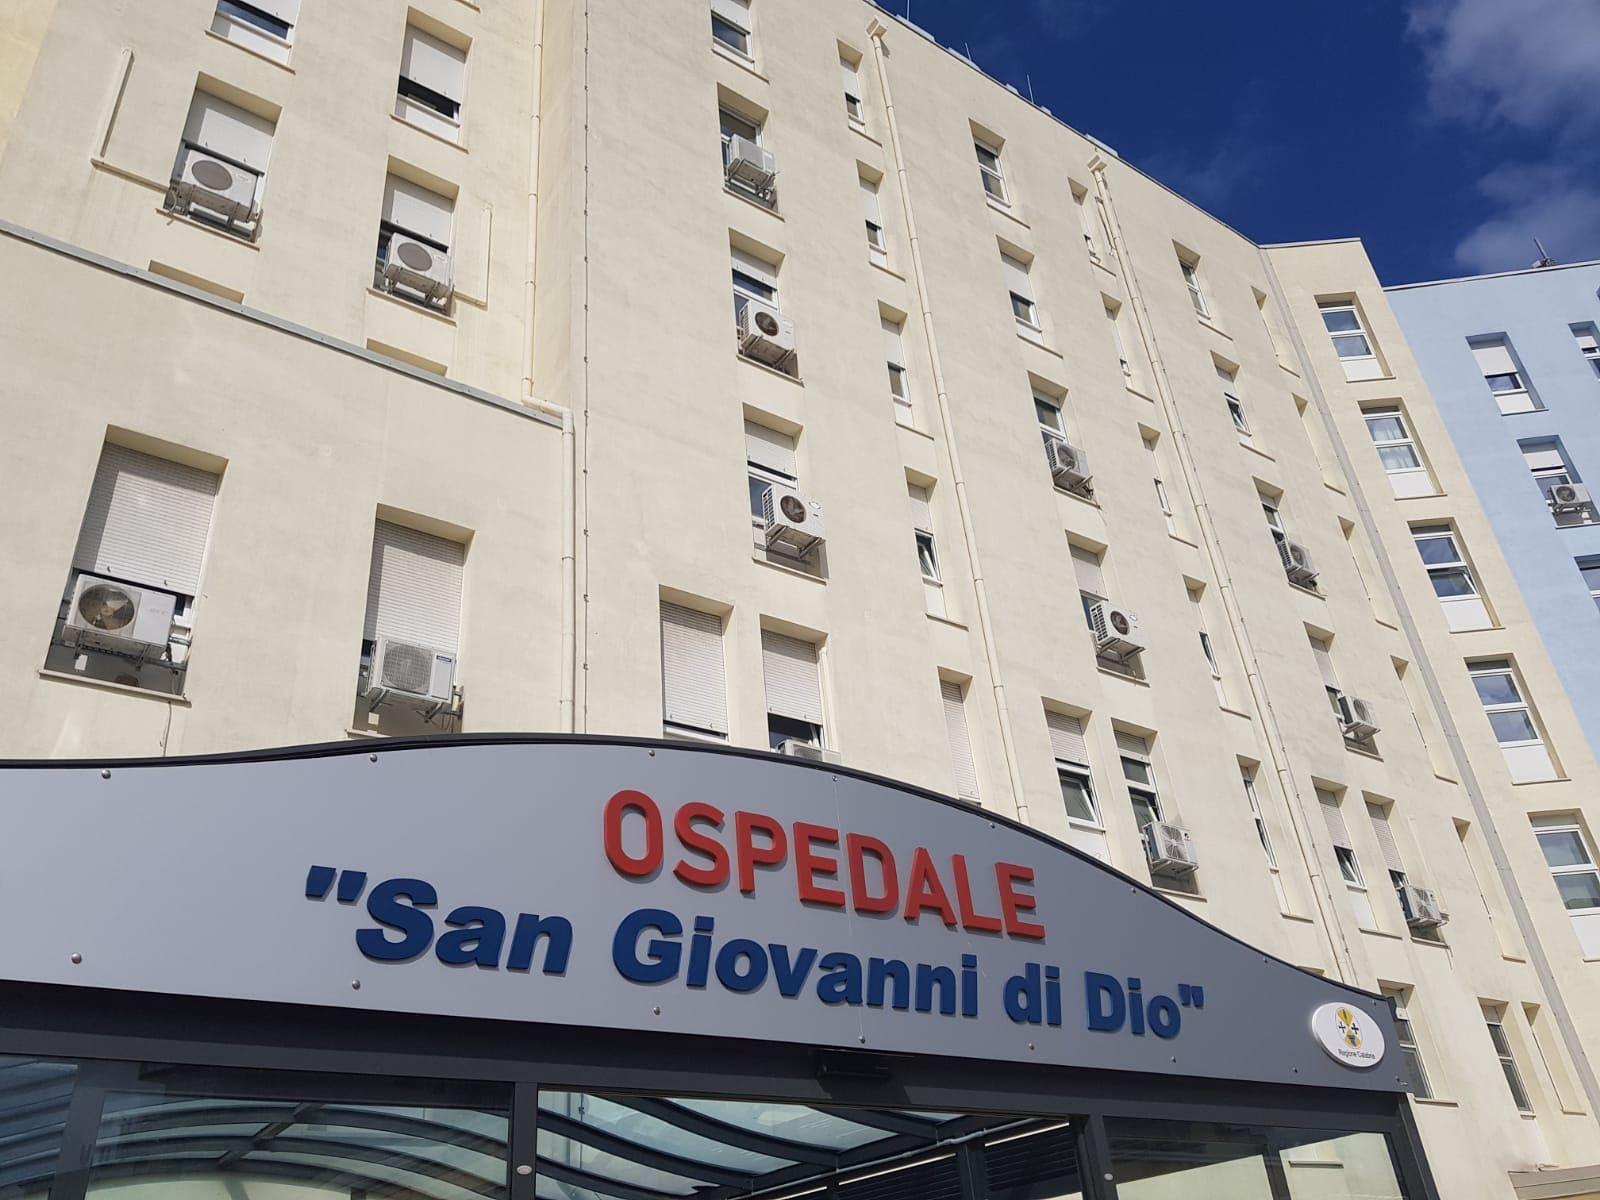 Ospedale di Crotone: eseguito un importante intervento salvavita su di una donna  ad alto rischio anestesiologico grazie all’“awake anesthesia”